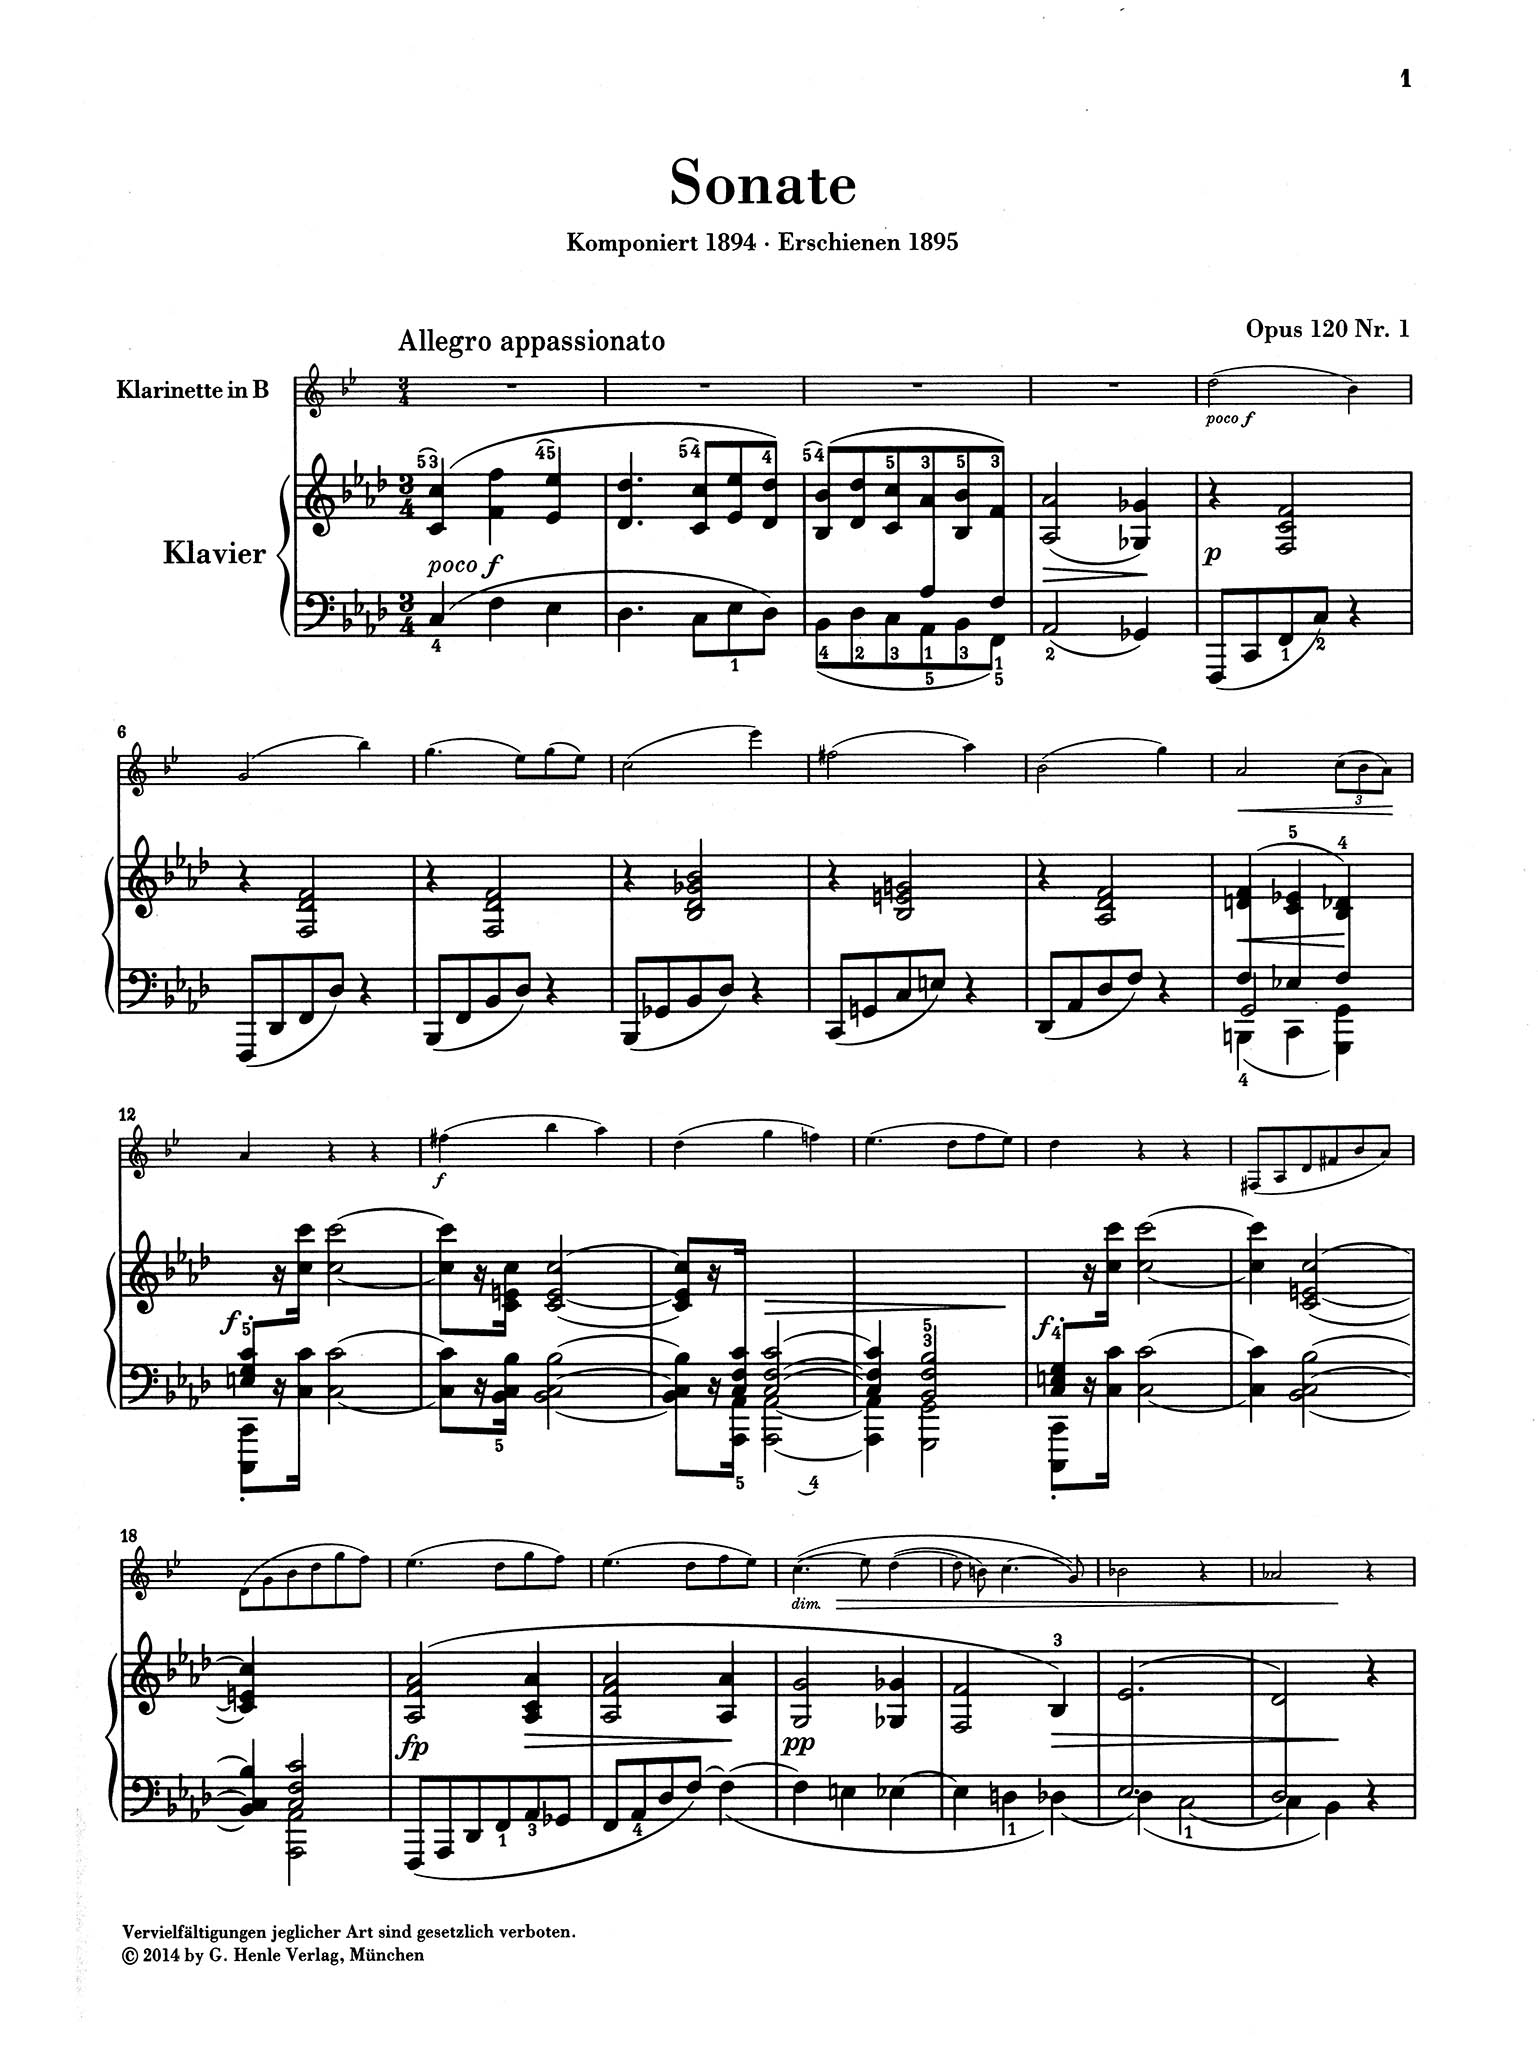 Sonata in F Minor, Op. 120 No. 1 - Movement 1